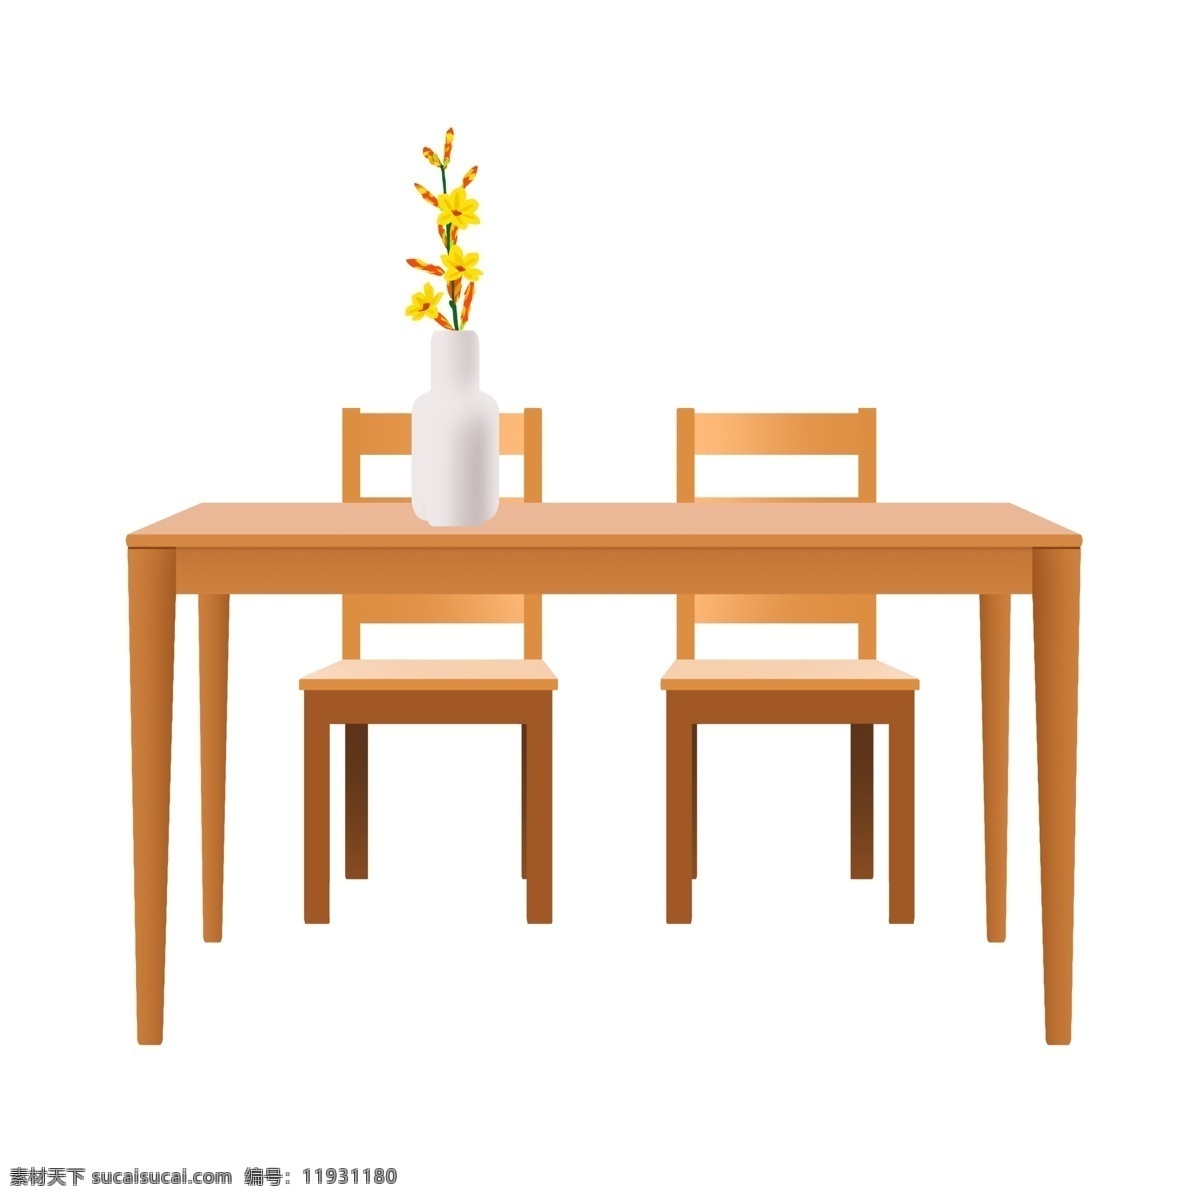 手绘 木质 桌椅 插画 手绘木质桌子 木质椅子 座椅 室内家具 花盆摆件 木质家具插画 卡通家具插画